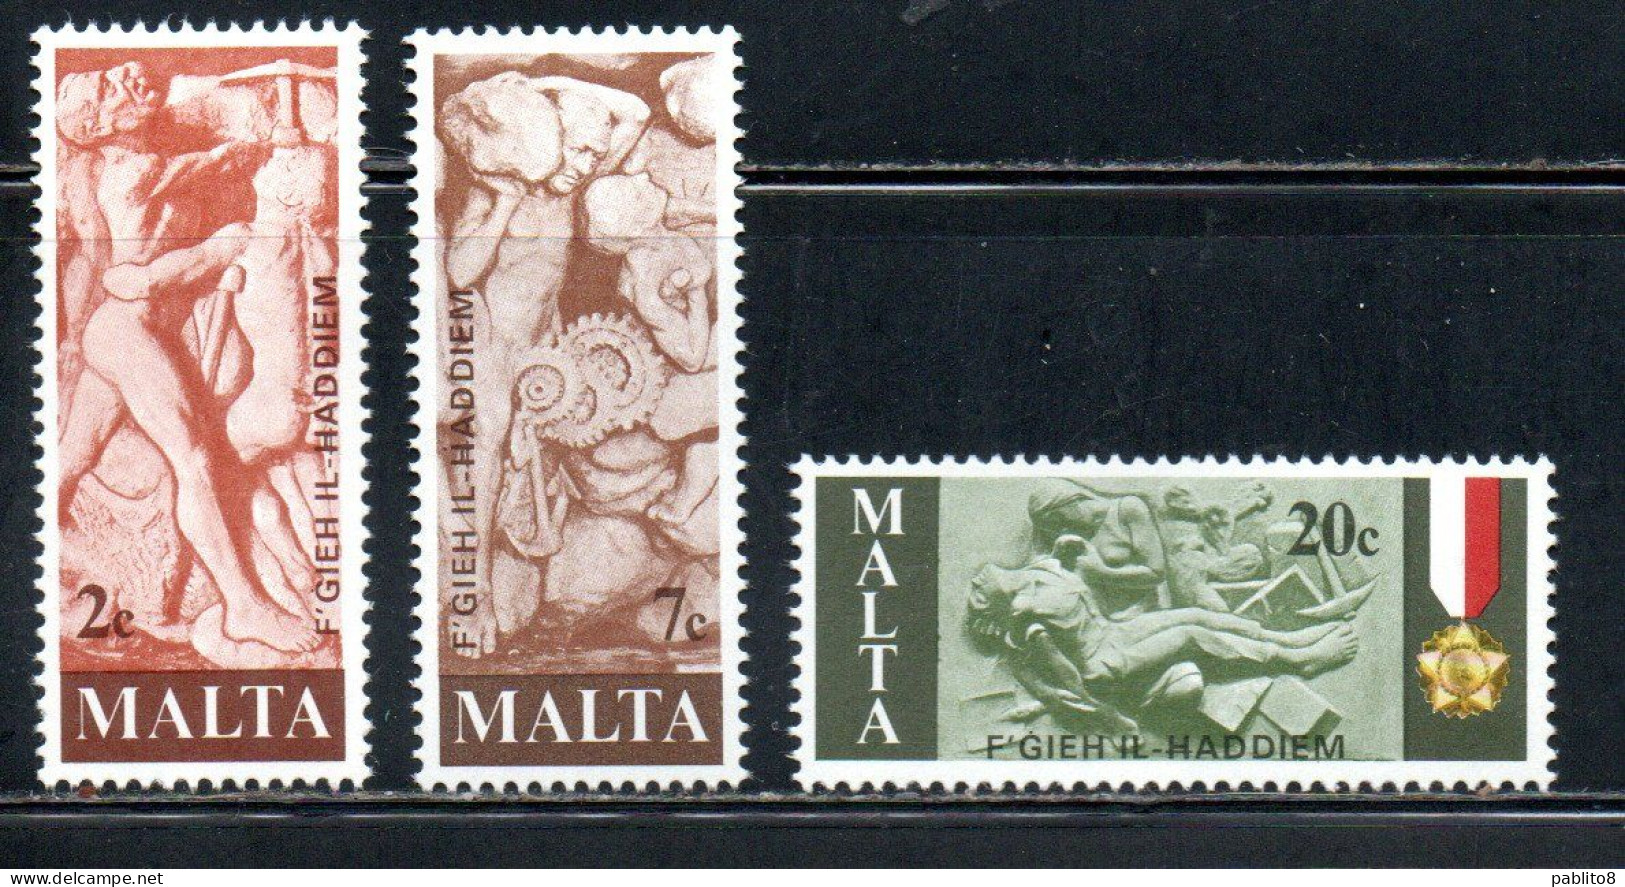 MALTA 1977 TRIBUTE TO MALTESE WORKERS SCULPTURES SCULTURE DEI LAVORATORI COMPLETE SET SERIE COMPLETA MNH - Malte